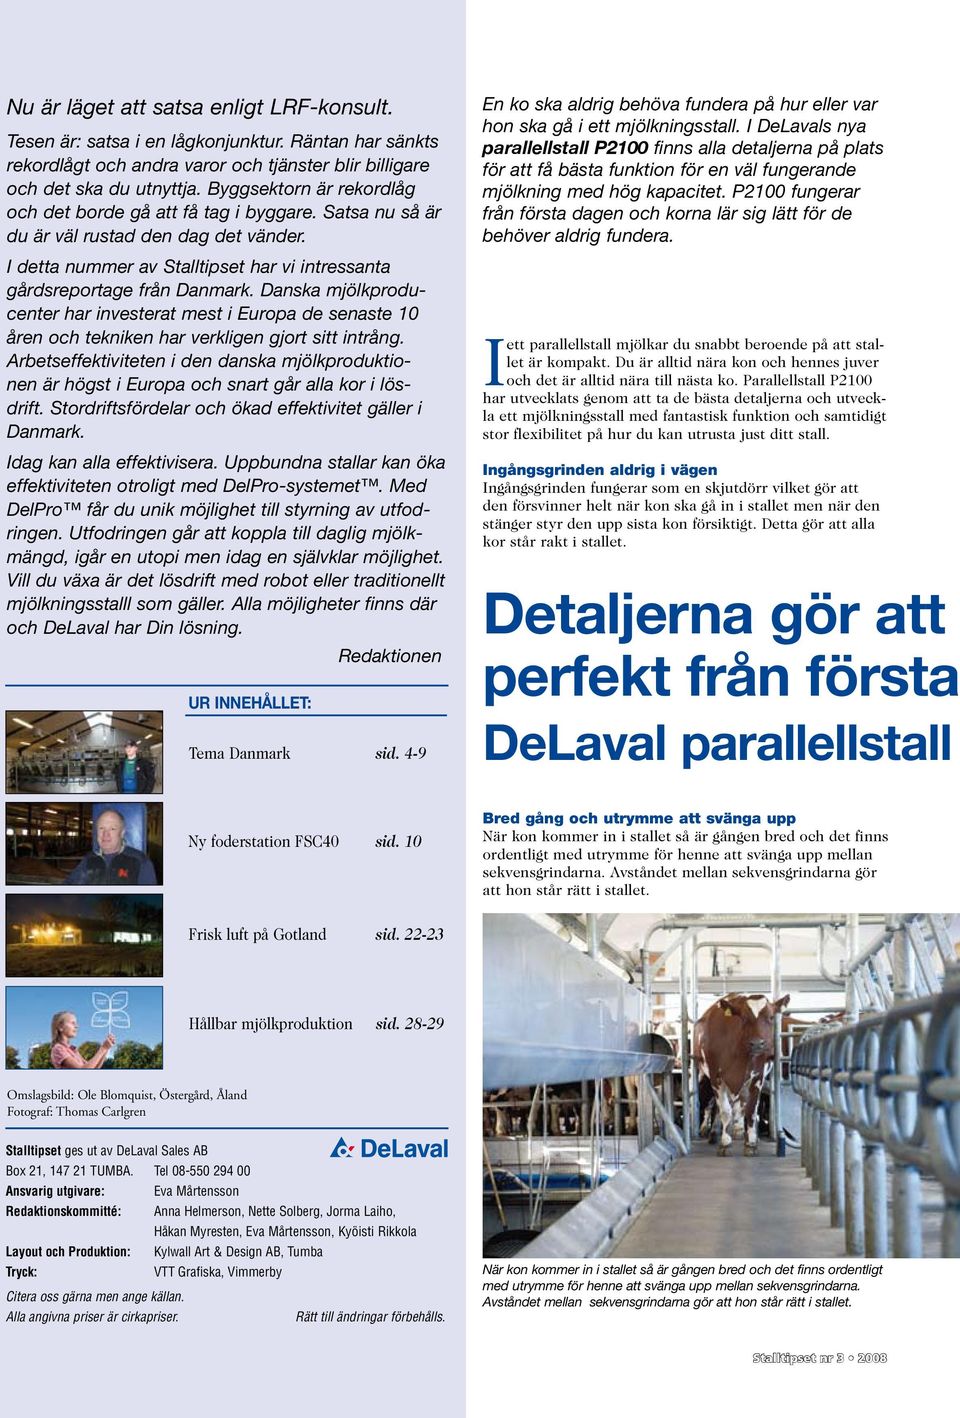 Danska mjölkproducenter har investerat mest i Europa de senaste 10 åren och tekniken har verkligen gjort sitt intrång.